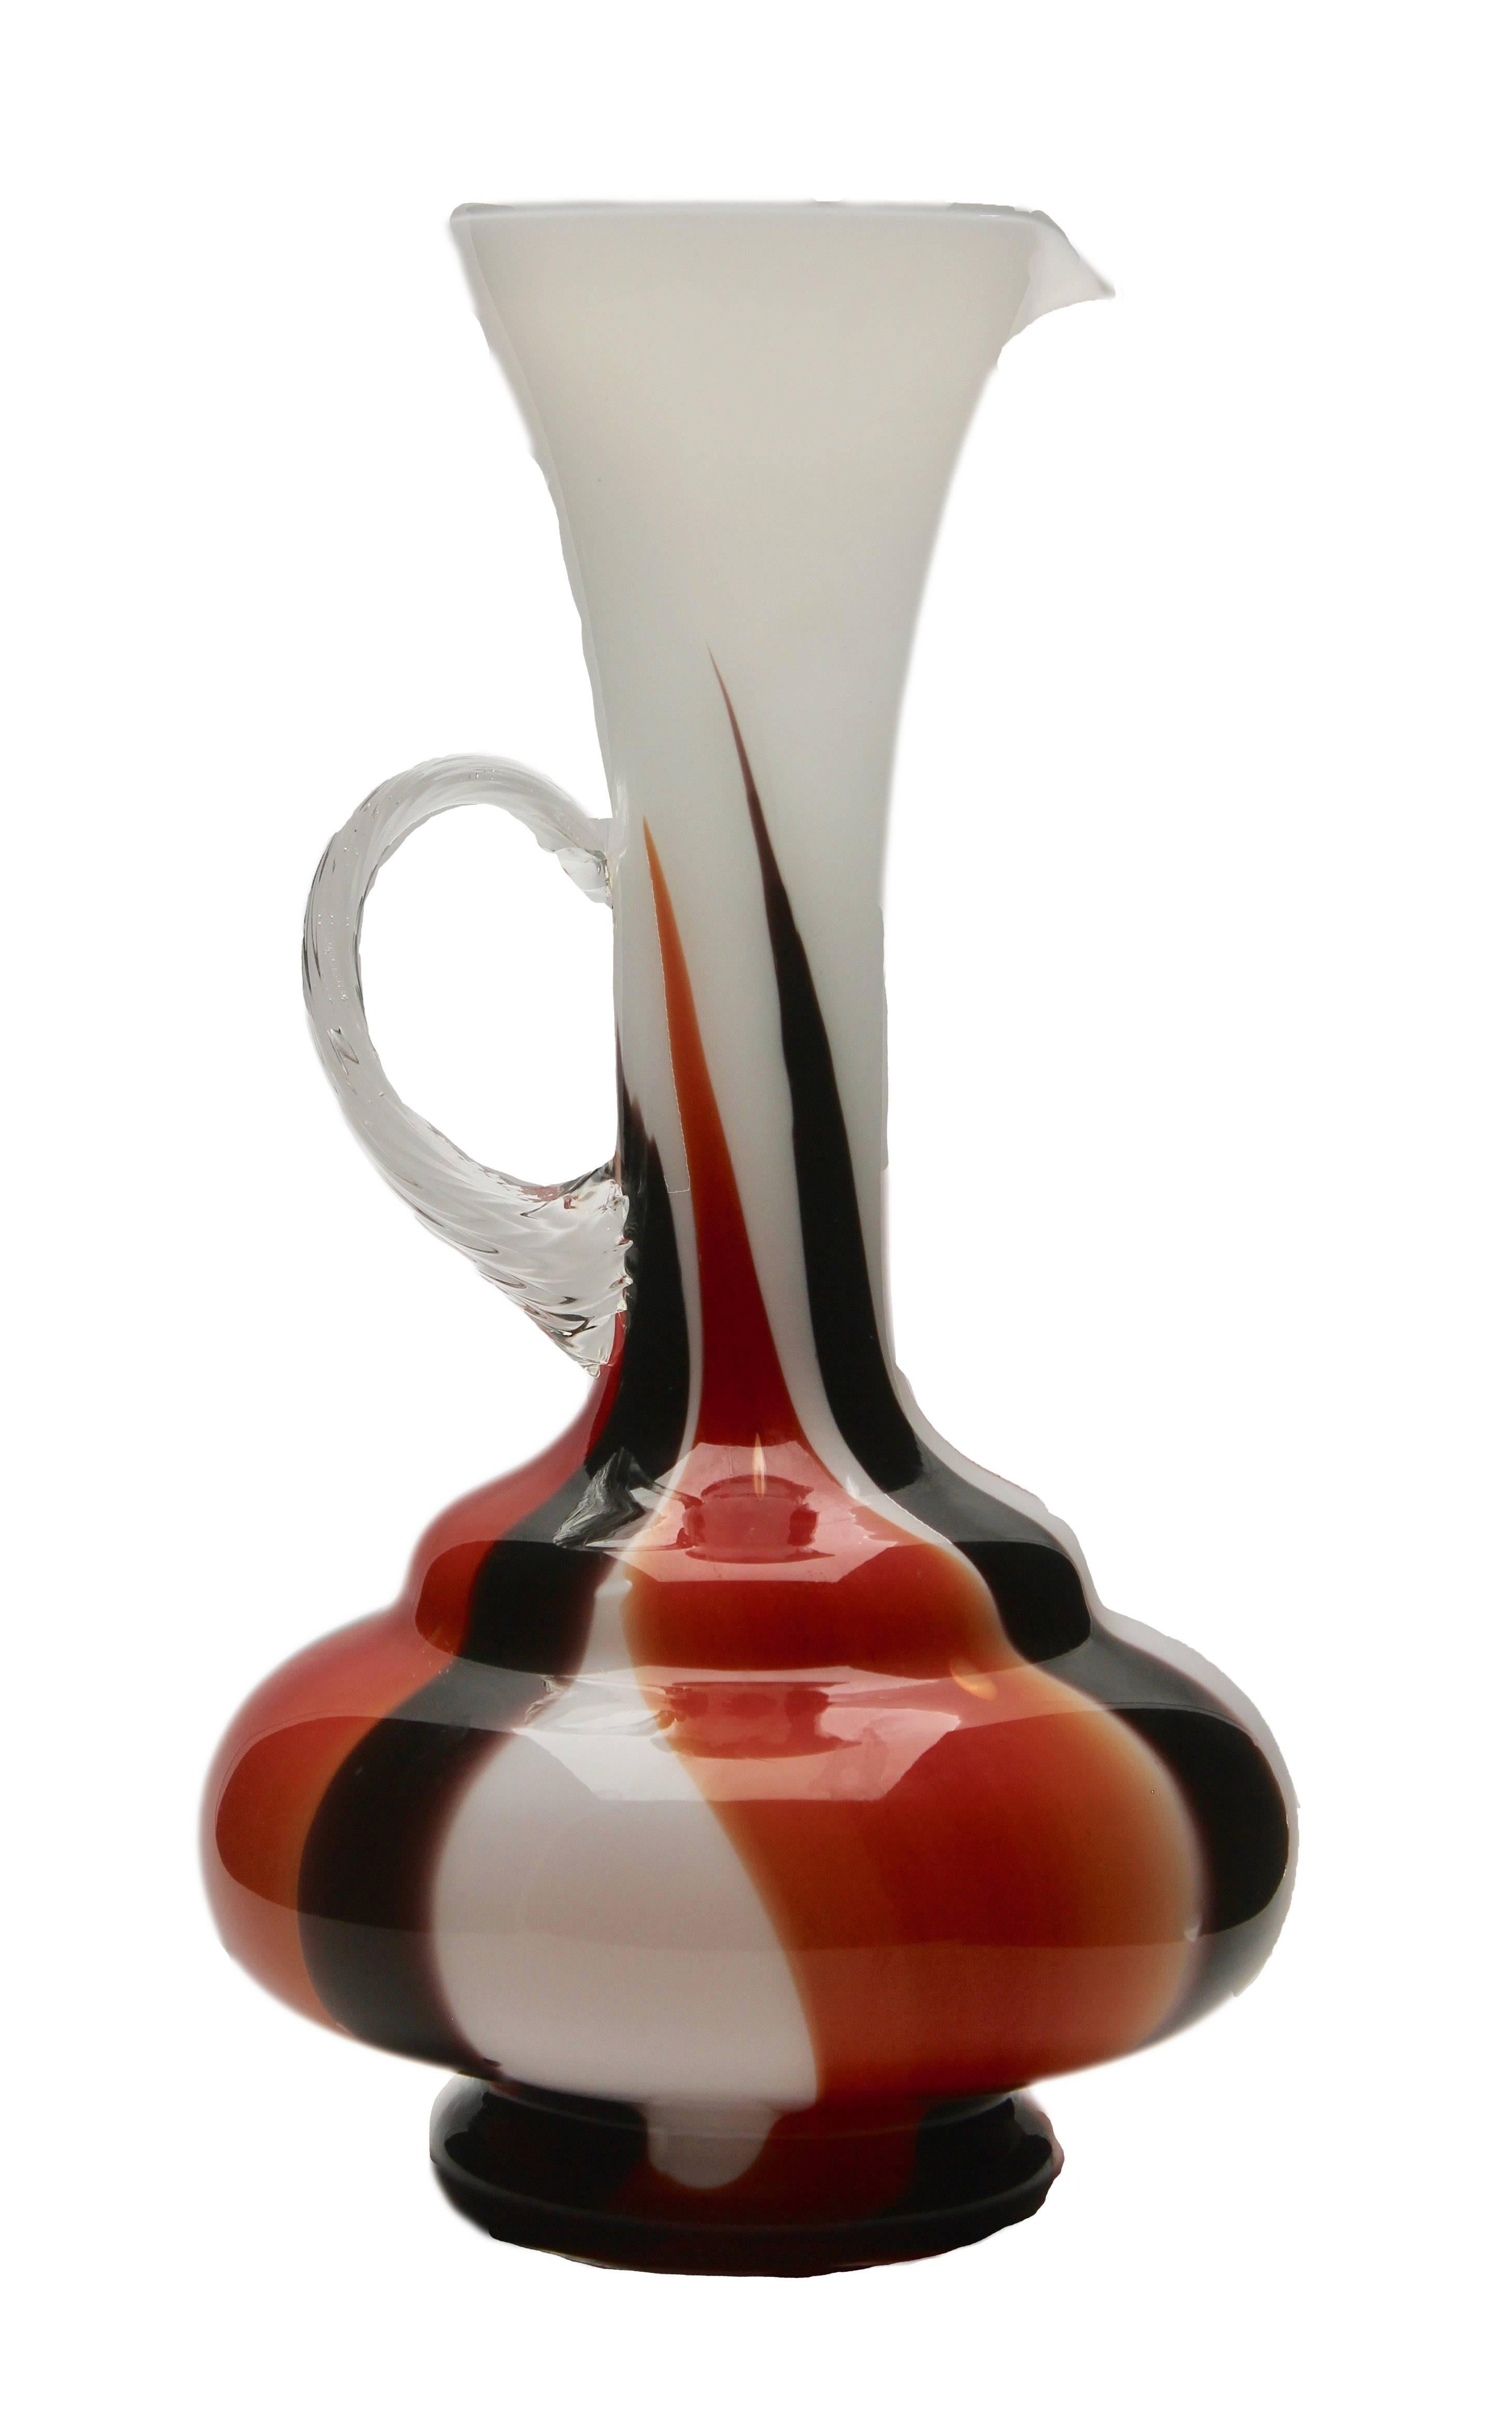 Vintage Krugvase von Opaline di Florence. Schwarz-rot-weißes Dekor mit hohem Kontrast
Dies ist eine seltene Farbe und Größe, ein Muss für jeden Sammler haben.
Sieht einfach umwerfend aus.
 

    

    
  